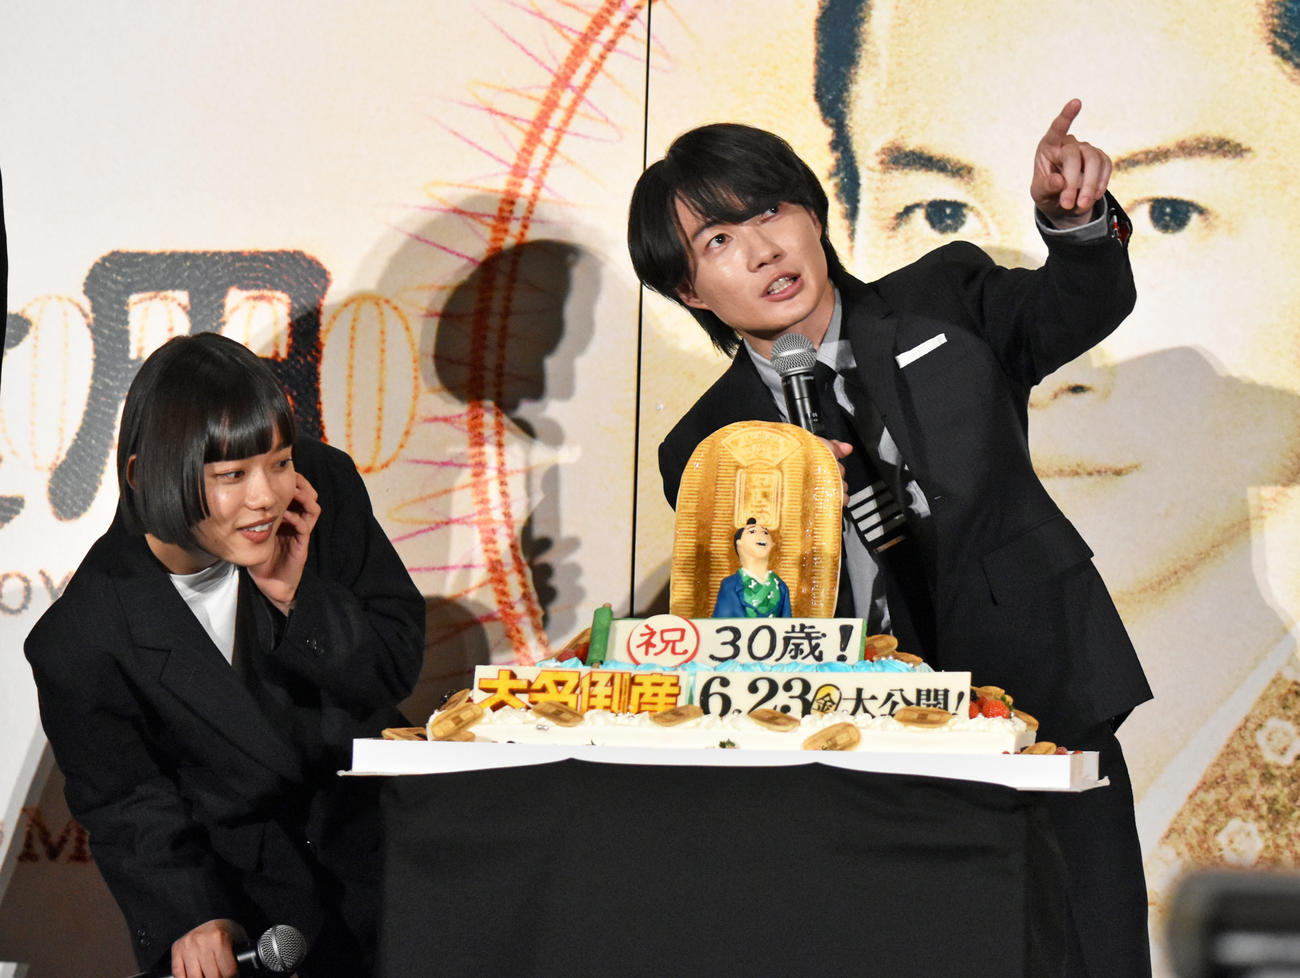 映画「大名倒産」完成披露試写会でサプライズバースデーケーキで30歳の誕生日を祝ってもらう神木隆之介。左は杉咲花